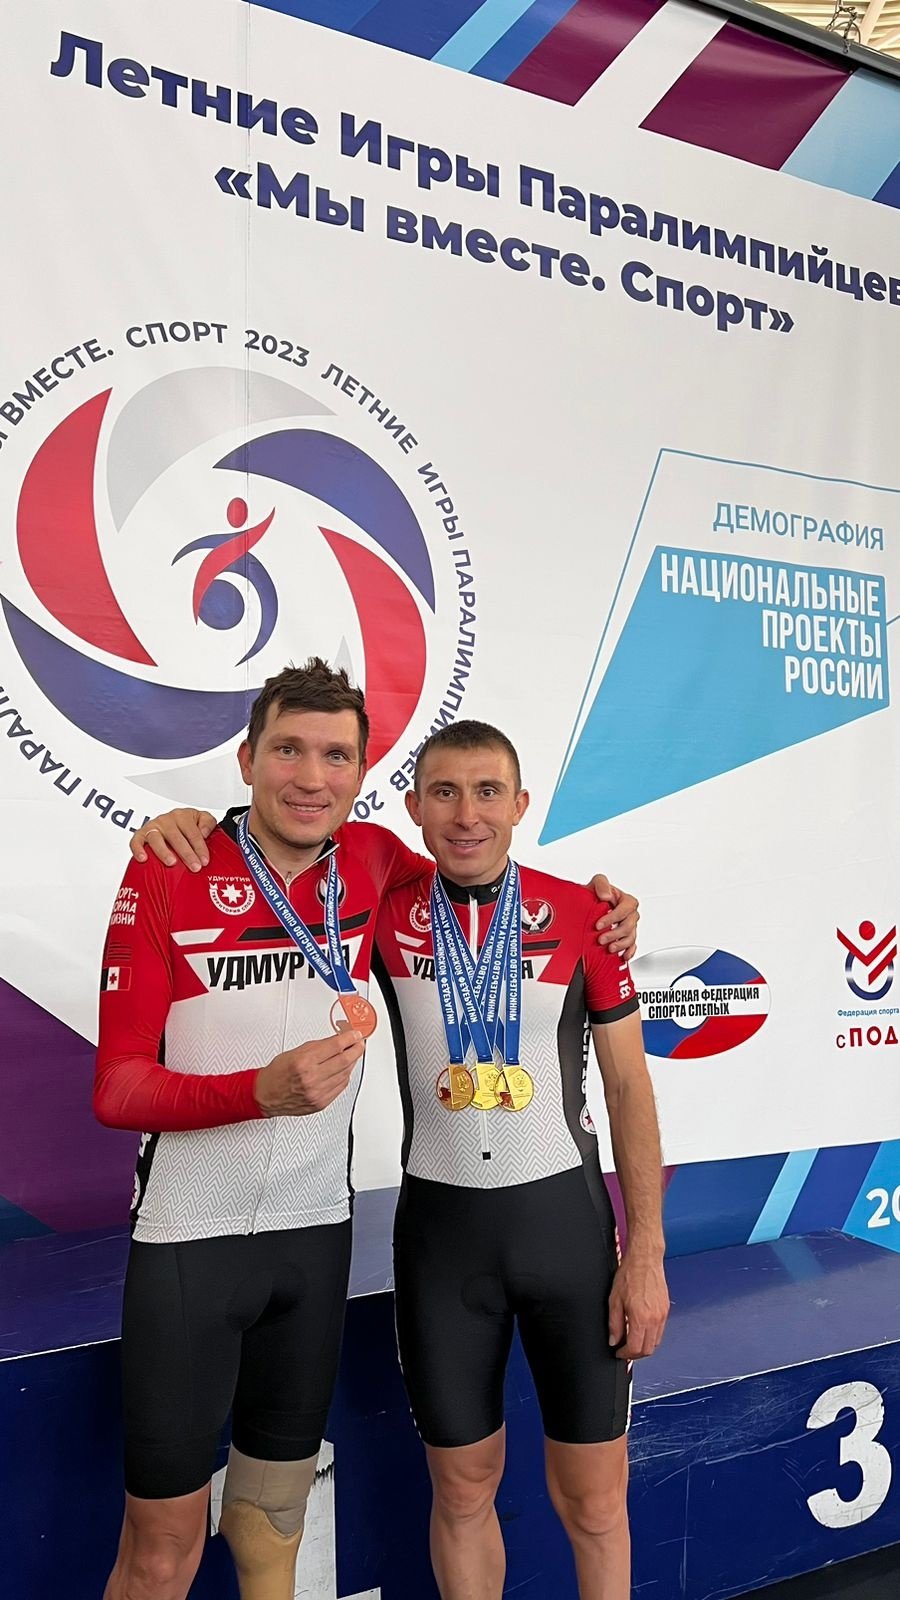 Паралимпийцы из Удмуртии взяли 4 медали на Чемпионате России по велоспорту 